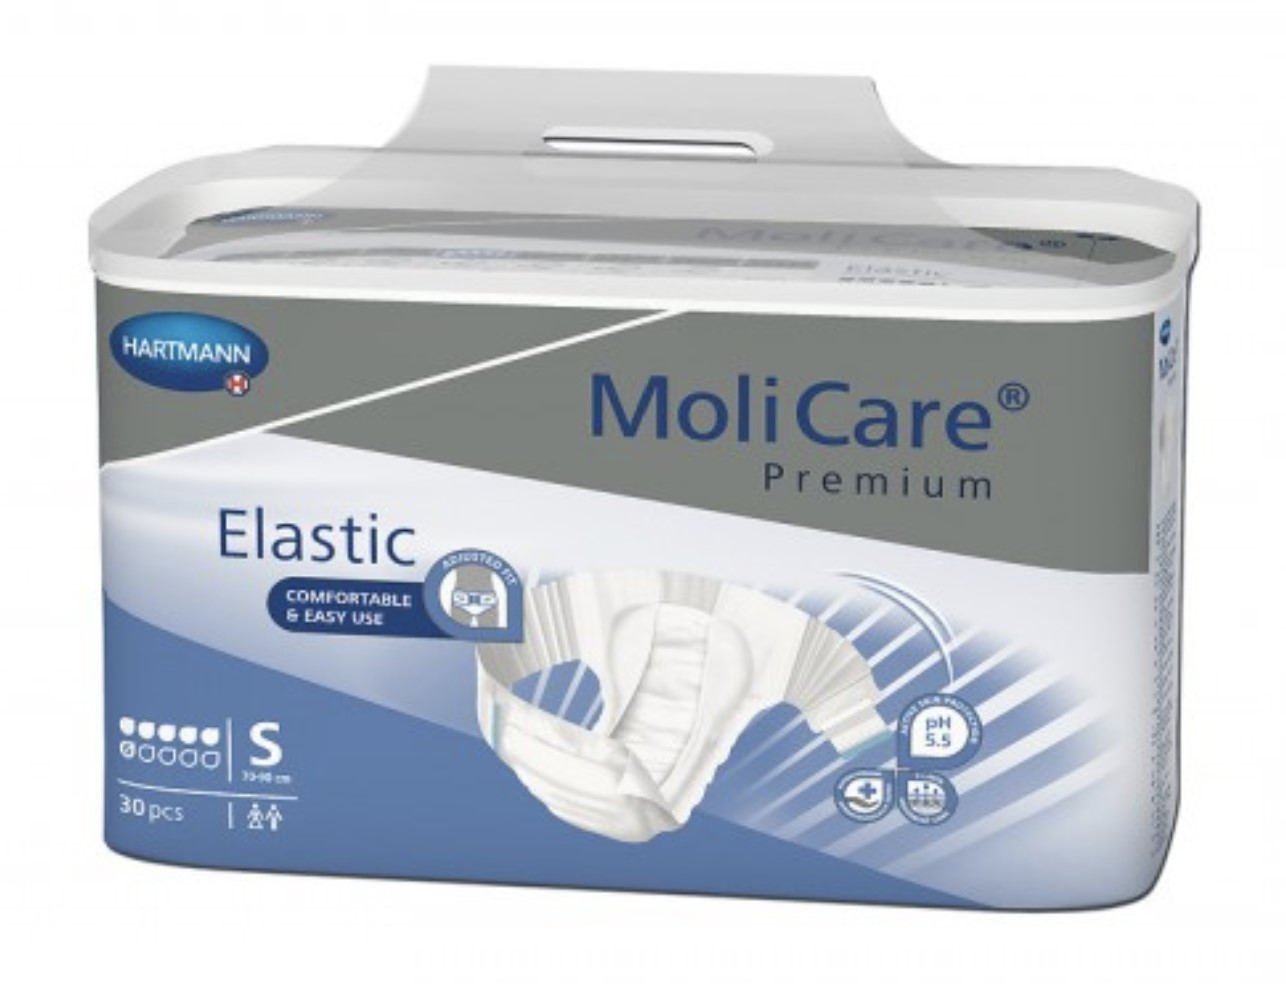 MoliCare Premium Elastic (6 gouttes) S